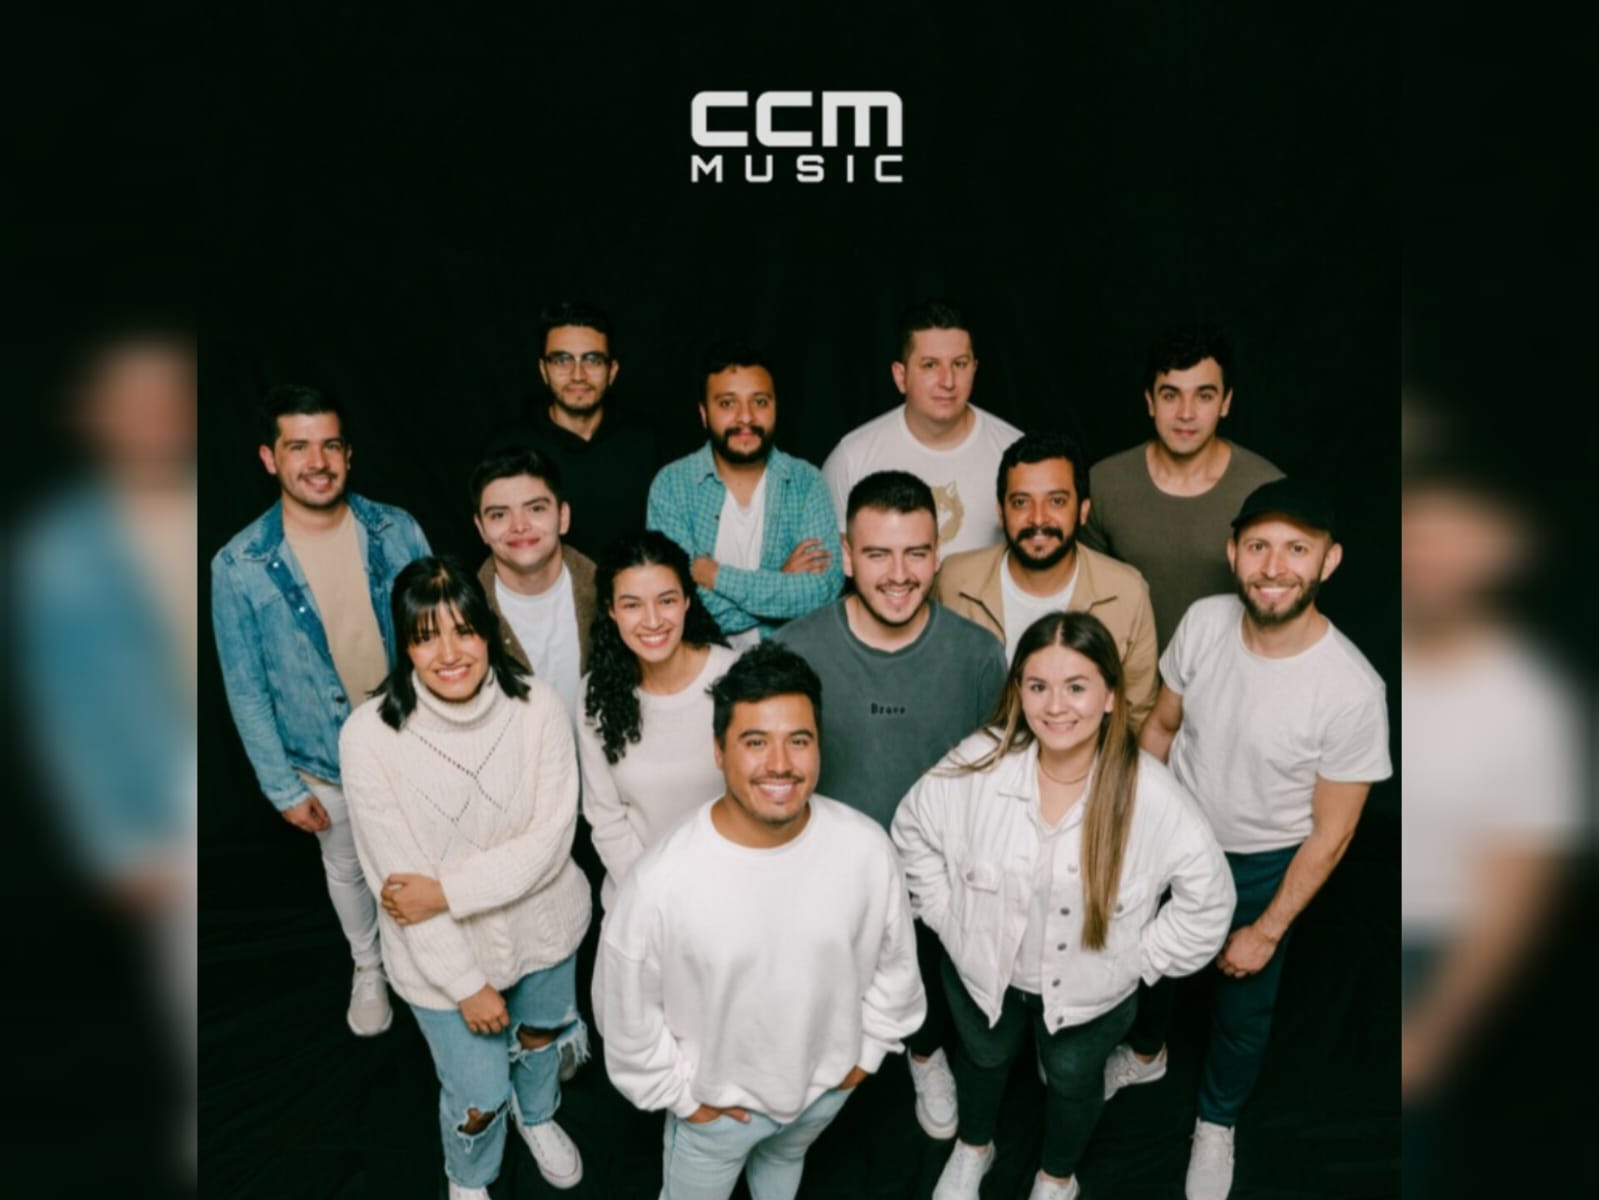 Lanzamiento de la banda CCM Music, titulado «Santo Espíritu».